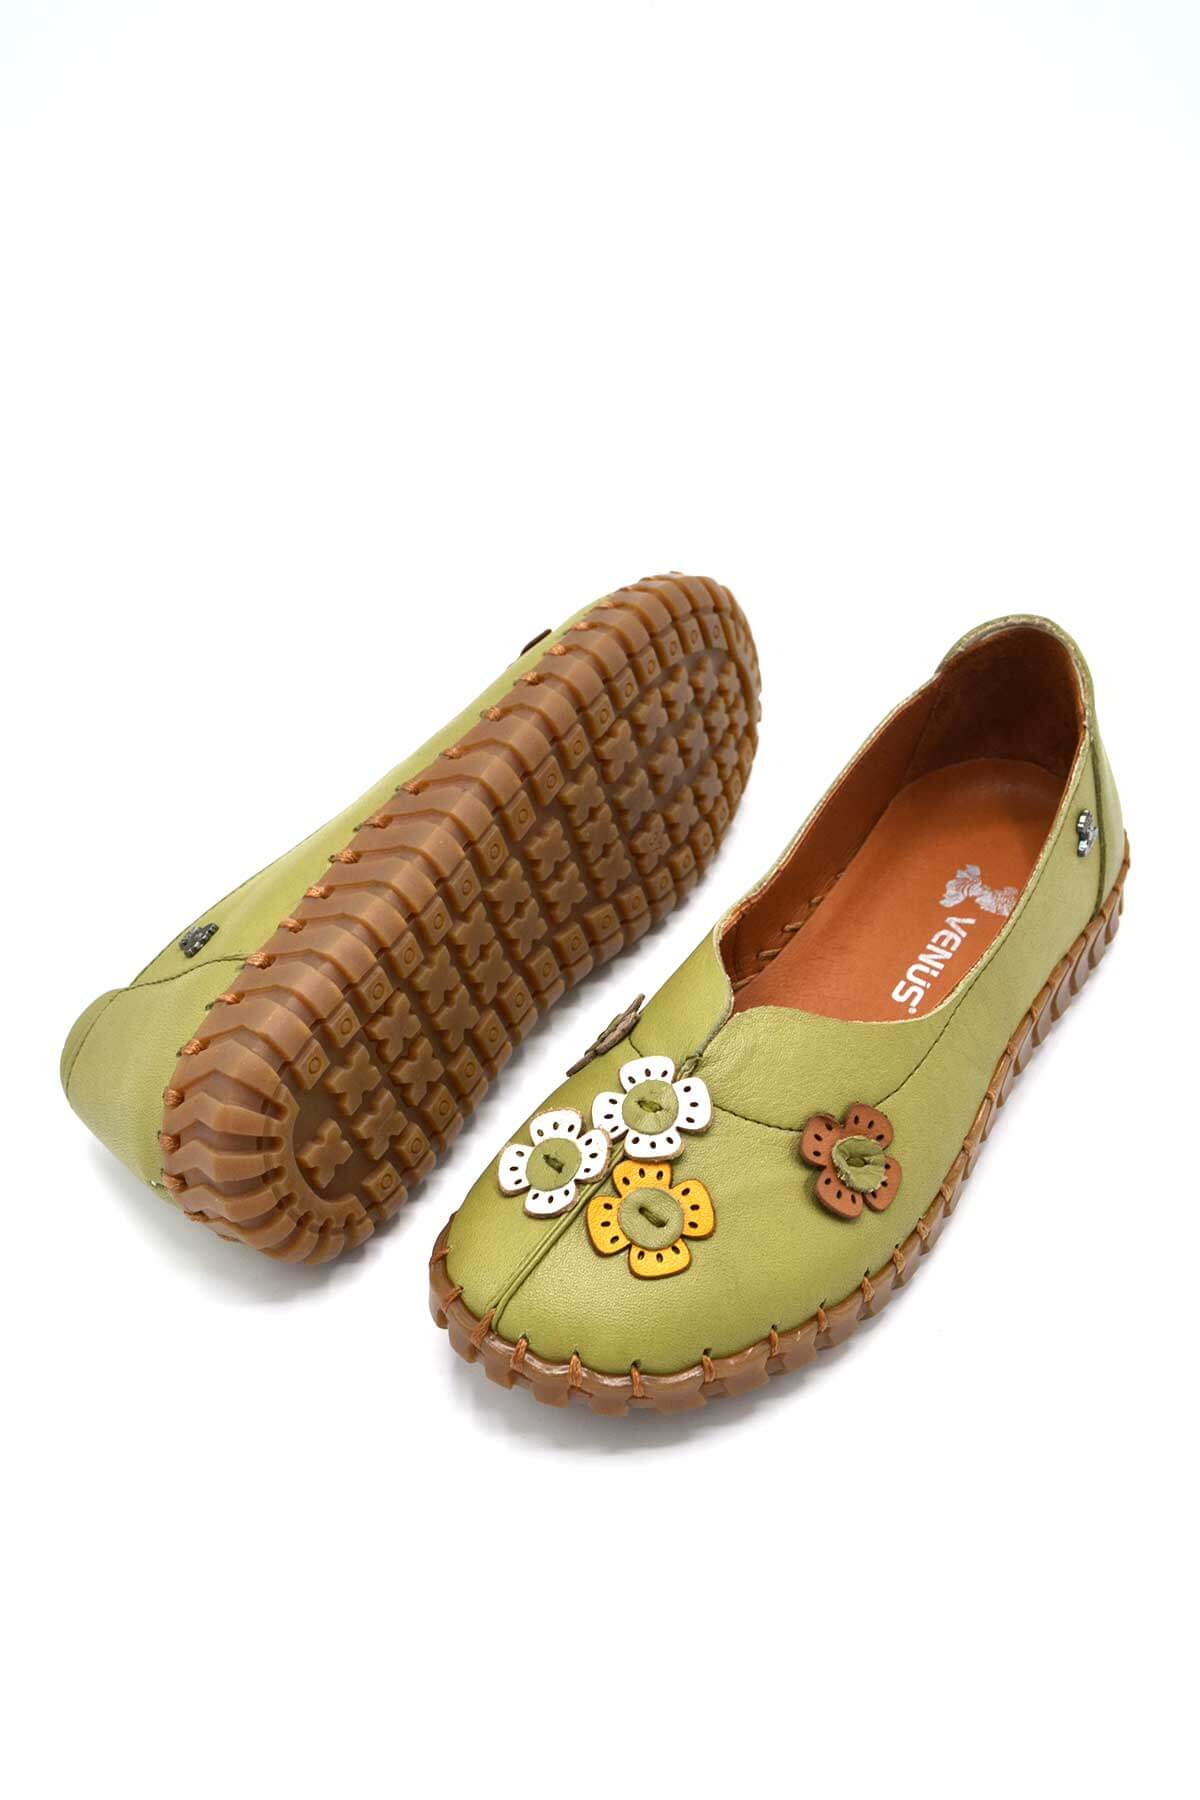 Kadın Comfort Deri Ayakkabı Yeşil 2010711Y - Thumbnail